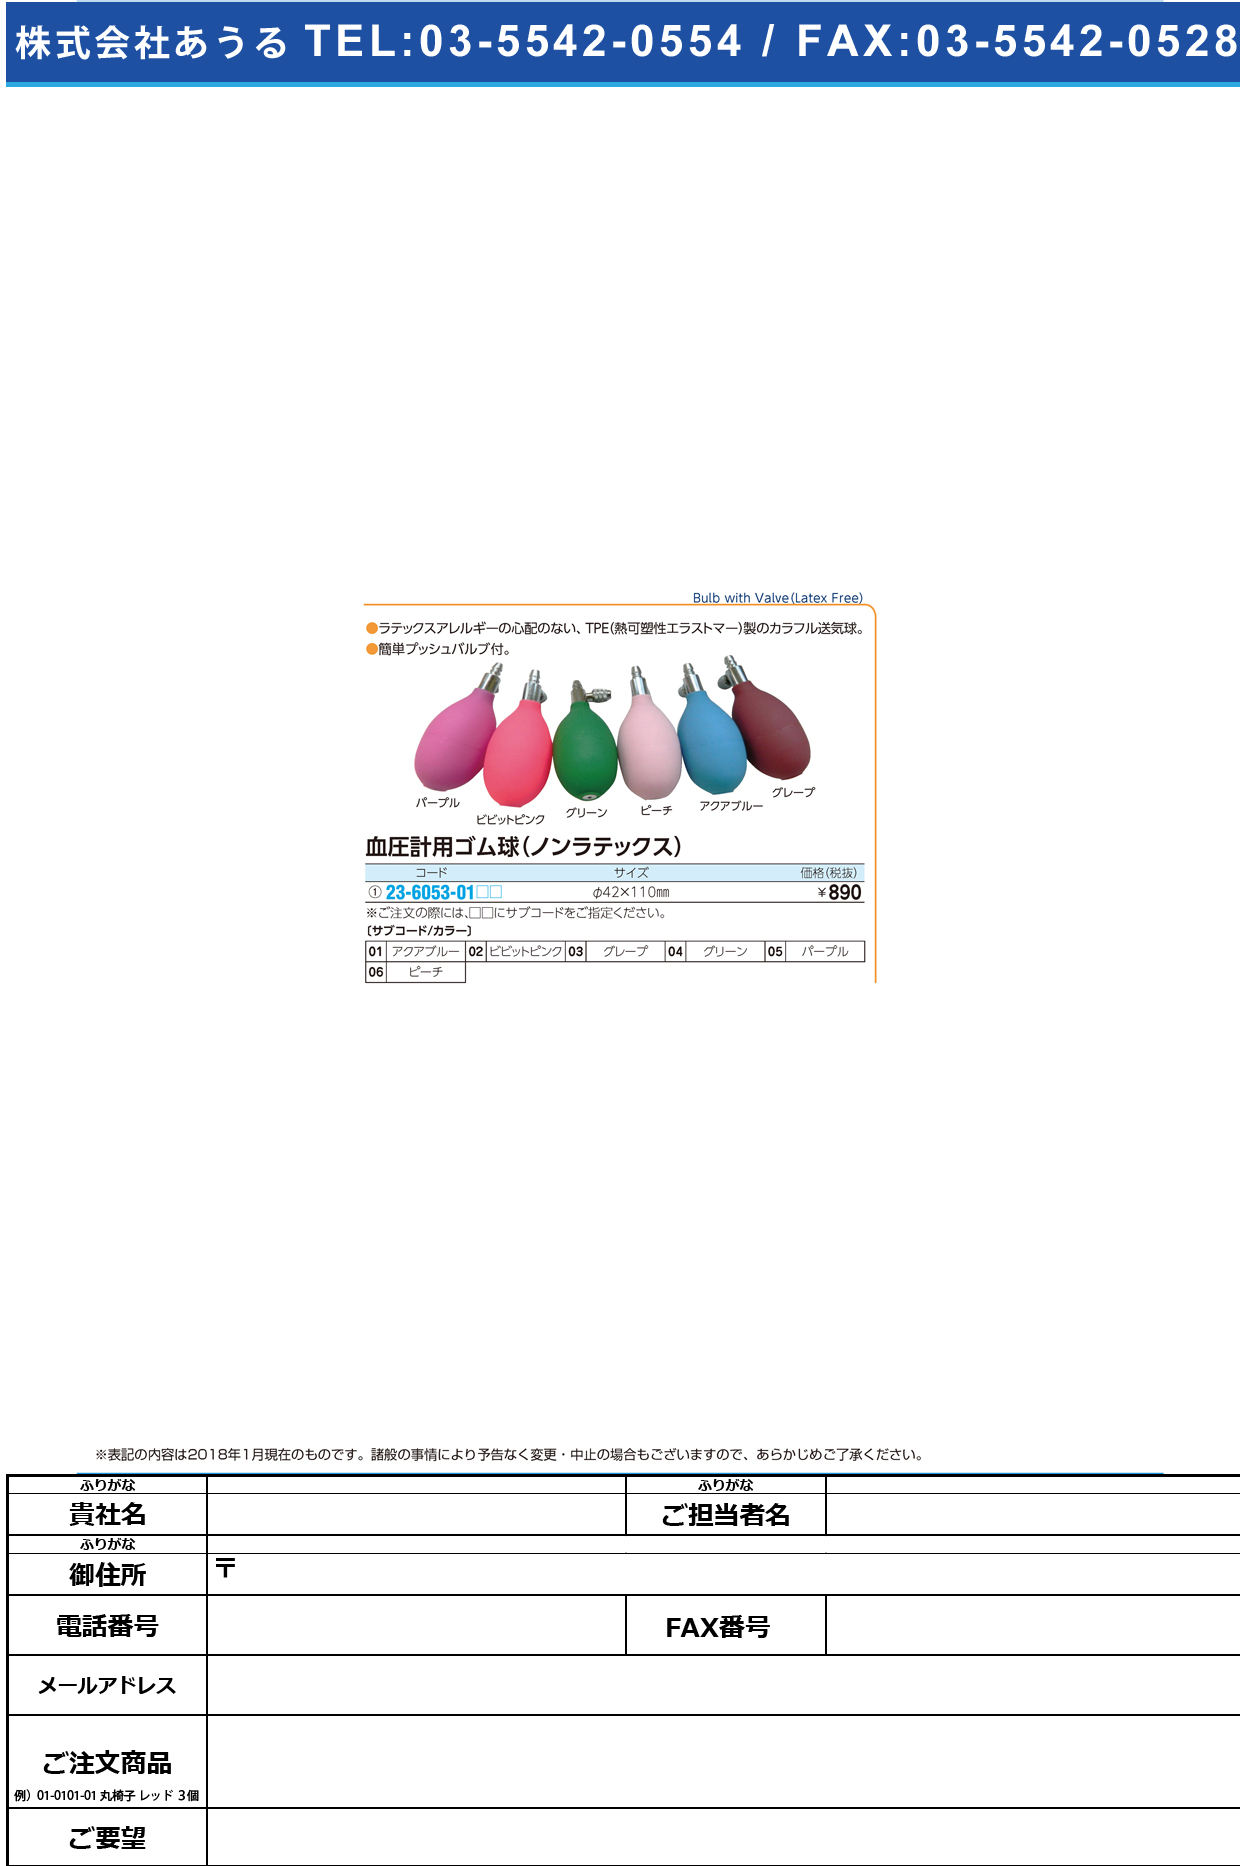 (23-6053-01)血圧計用カラーゴム球（ノンラテックス SM-8021 ｶﾗｰｺﾞﾑｷｭﾉﾝﾗﾃｯｸｽ アクアブルー【1個単位】【2018年カタログ商品】